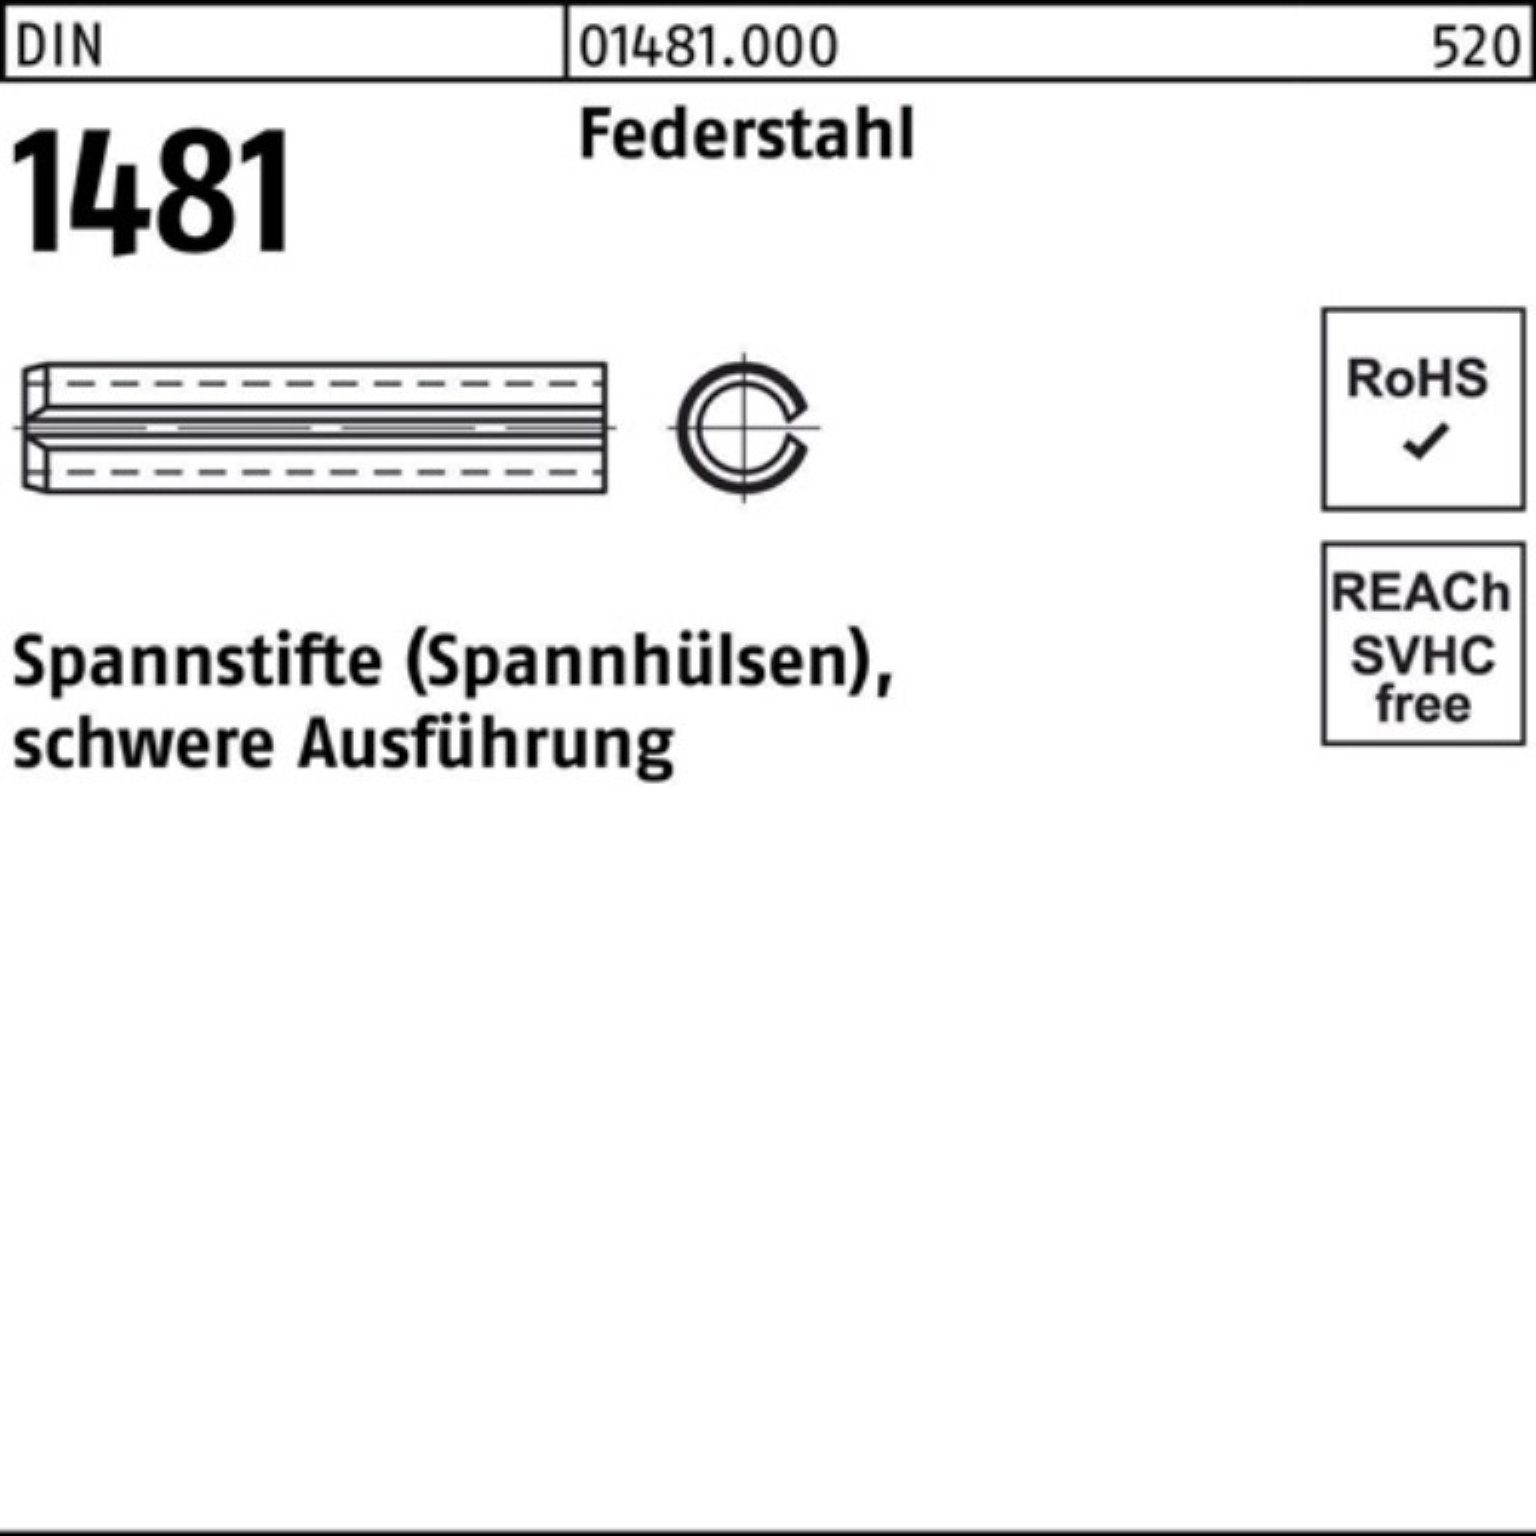 Reyher Spannstift 100er Pack Spannstift 10 schwere Ausführung 12 DIN 6x 1481 Federstahl